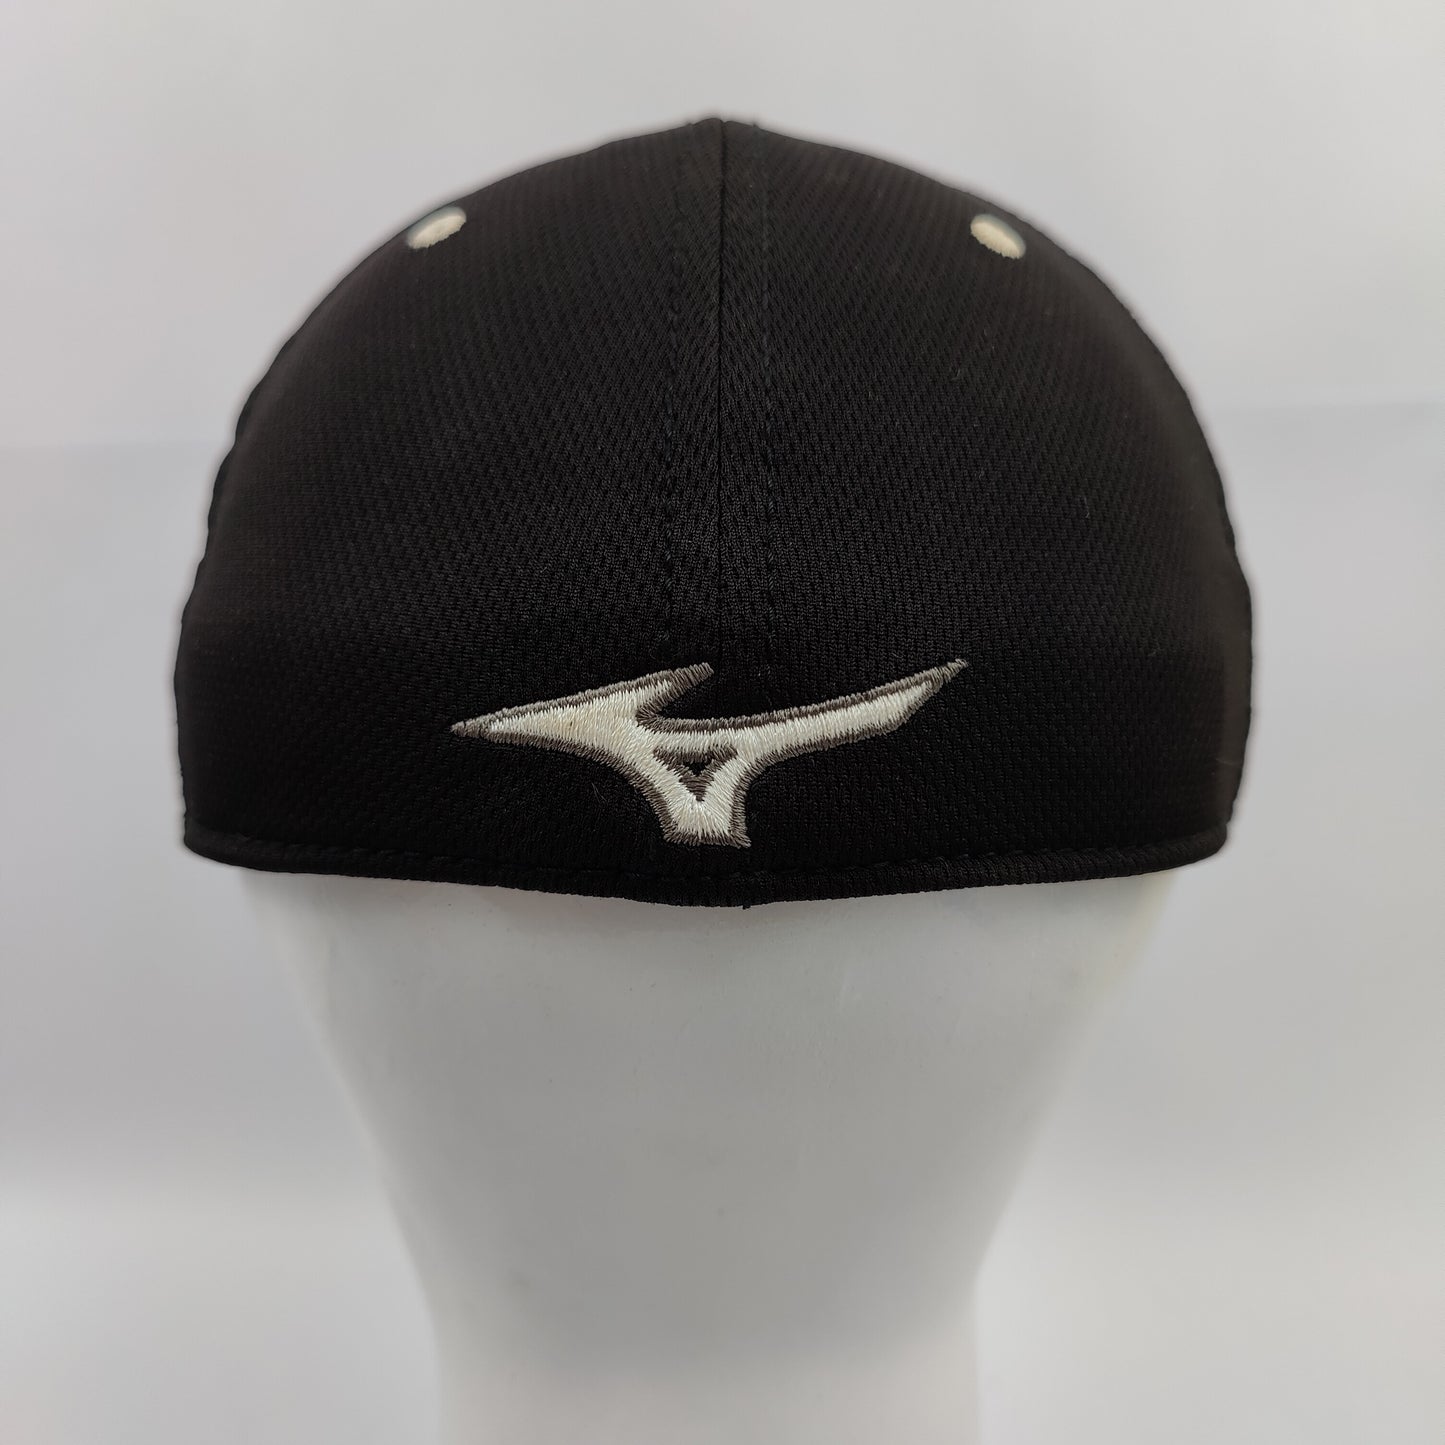 Mizuno Golf Tour Delta Fitted Hat - Black - 1017